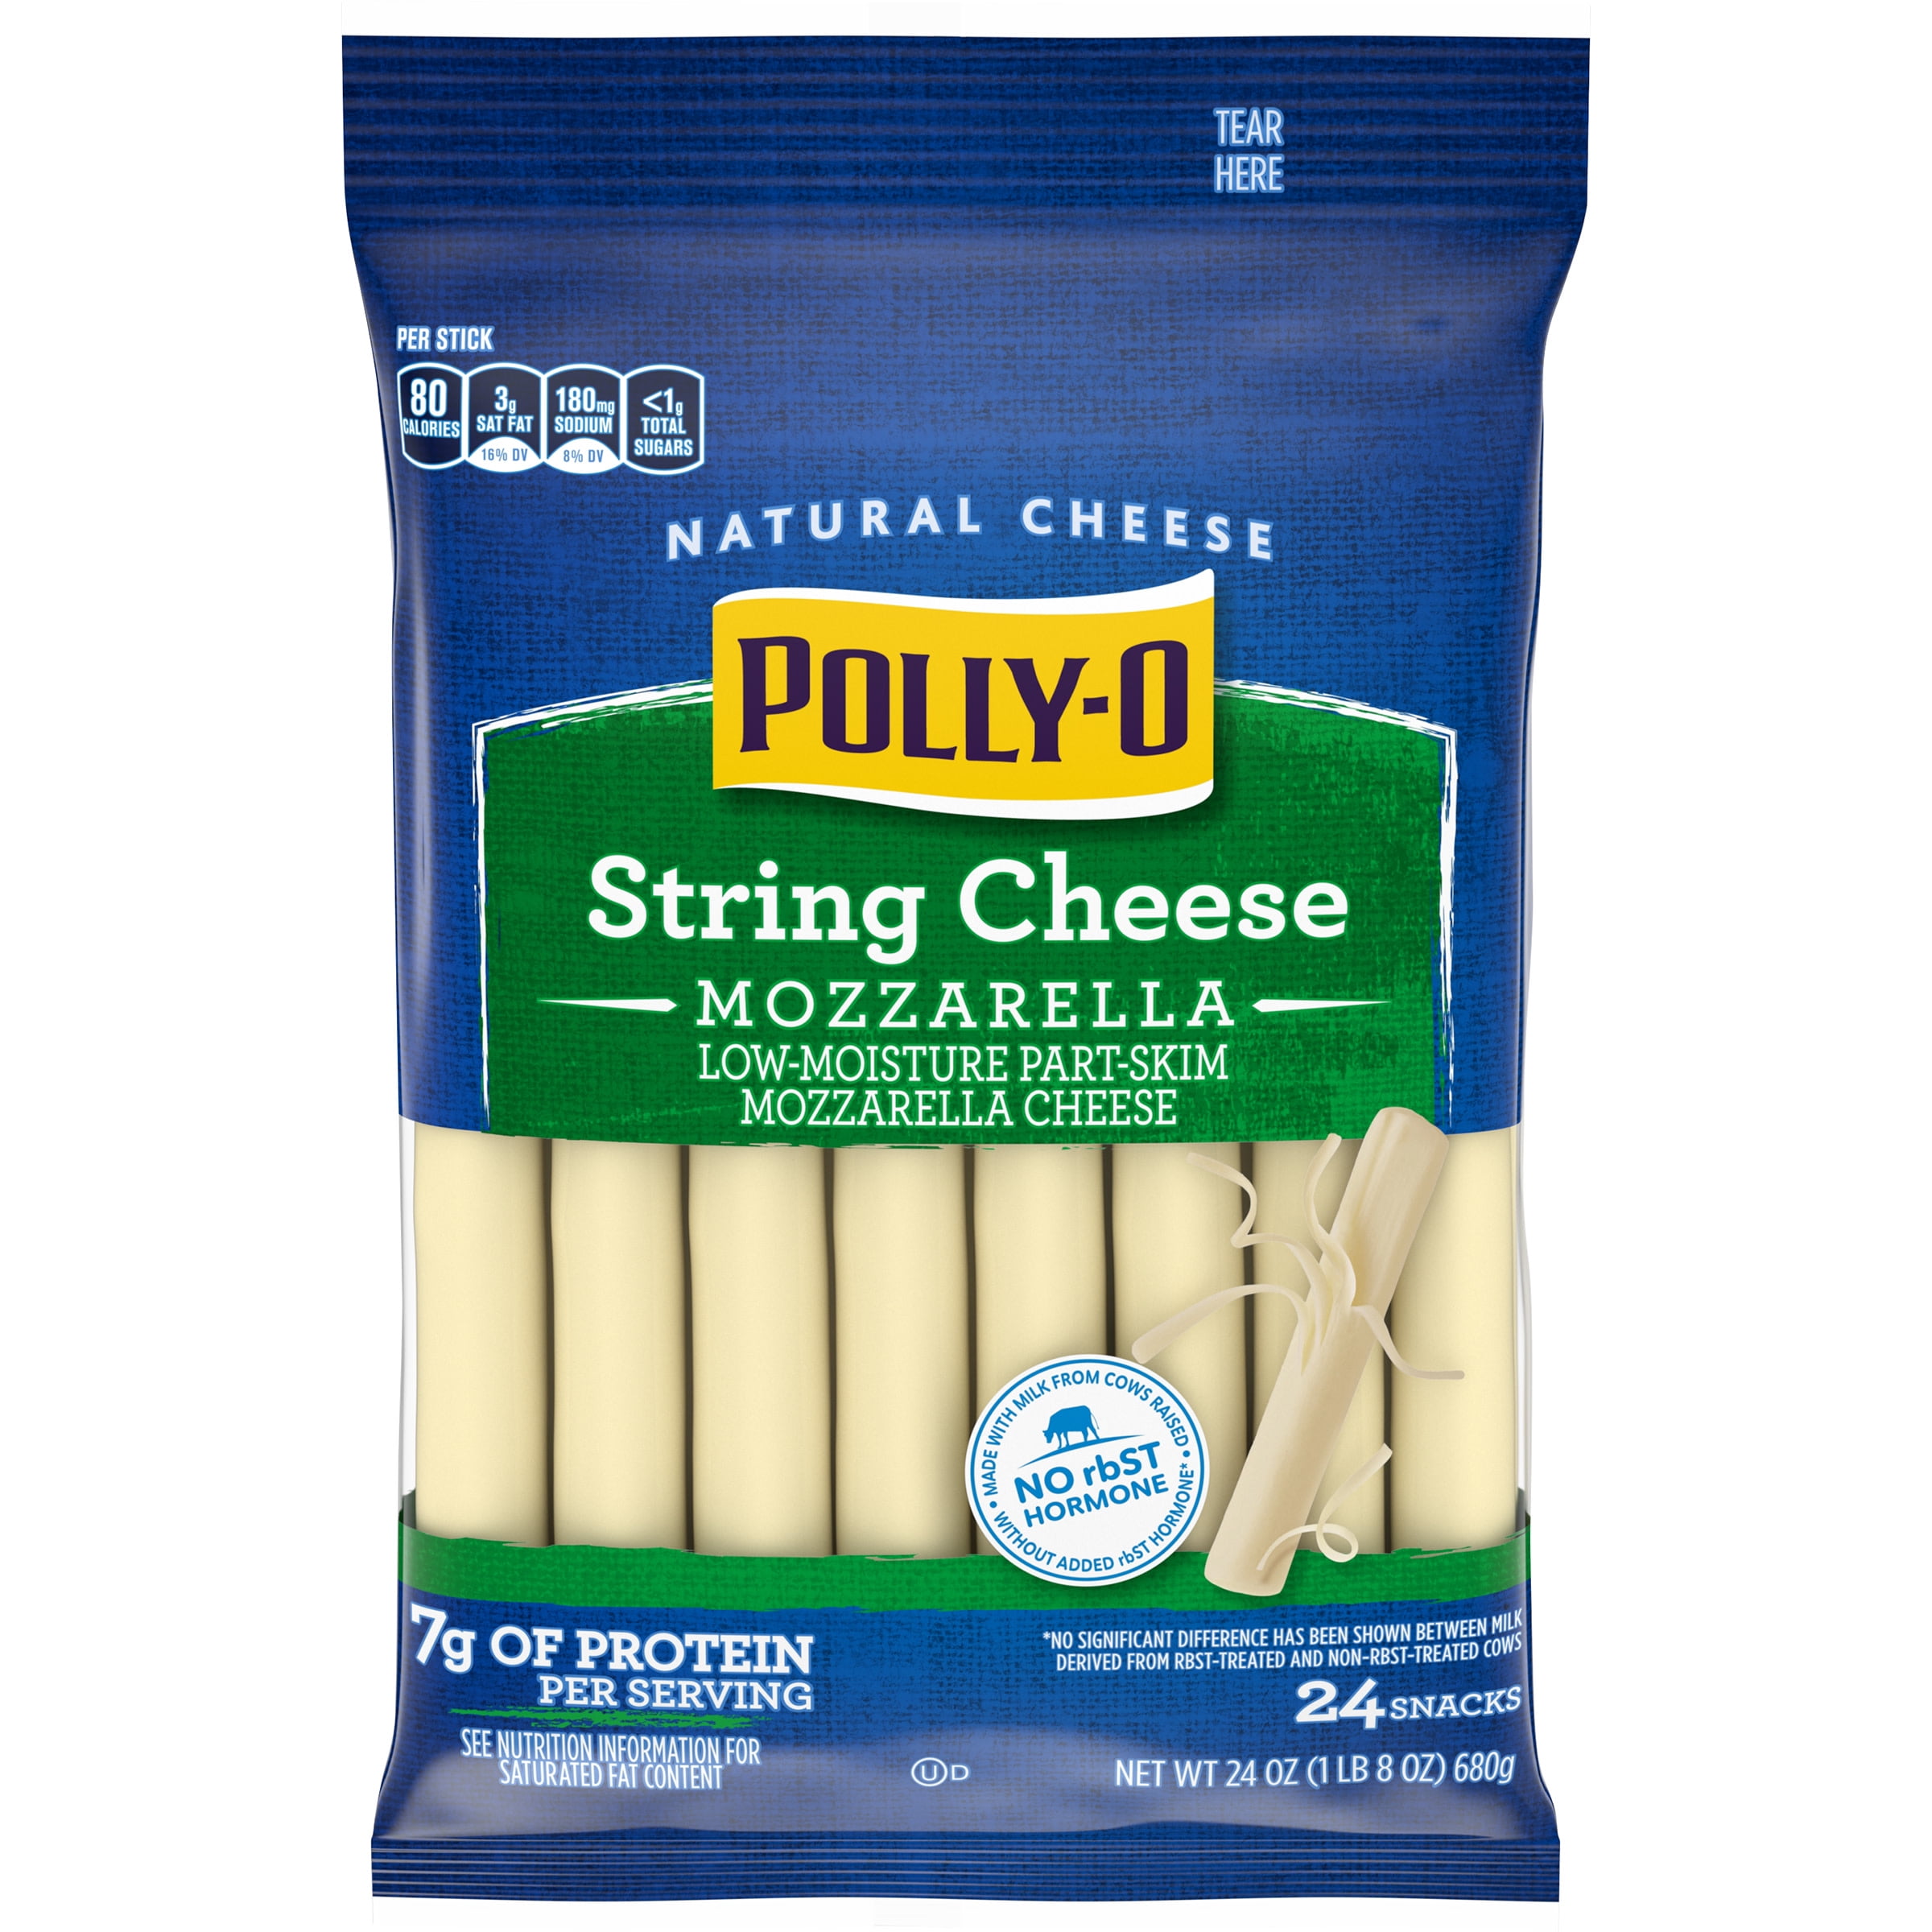 Polly-O String Cheese Mozzarella Cheese Snacks, 24 ct Sticks